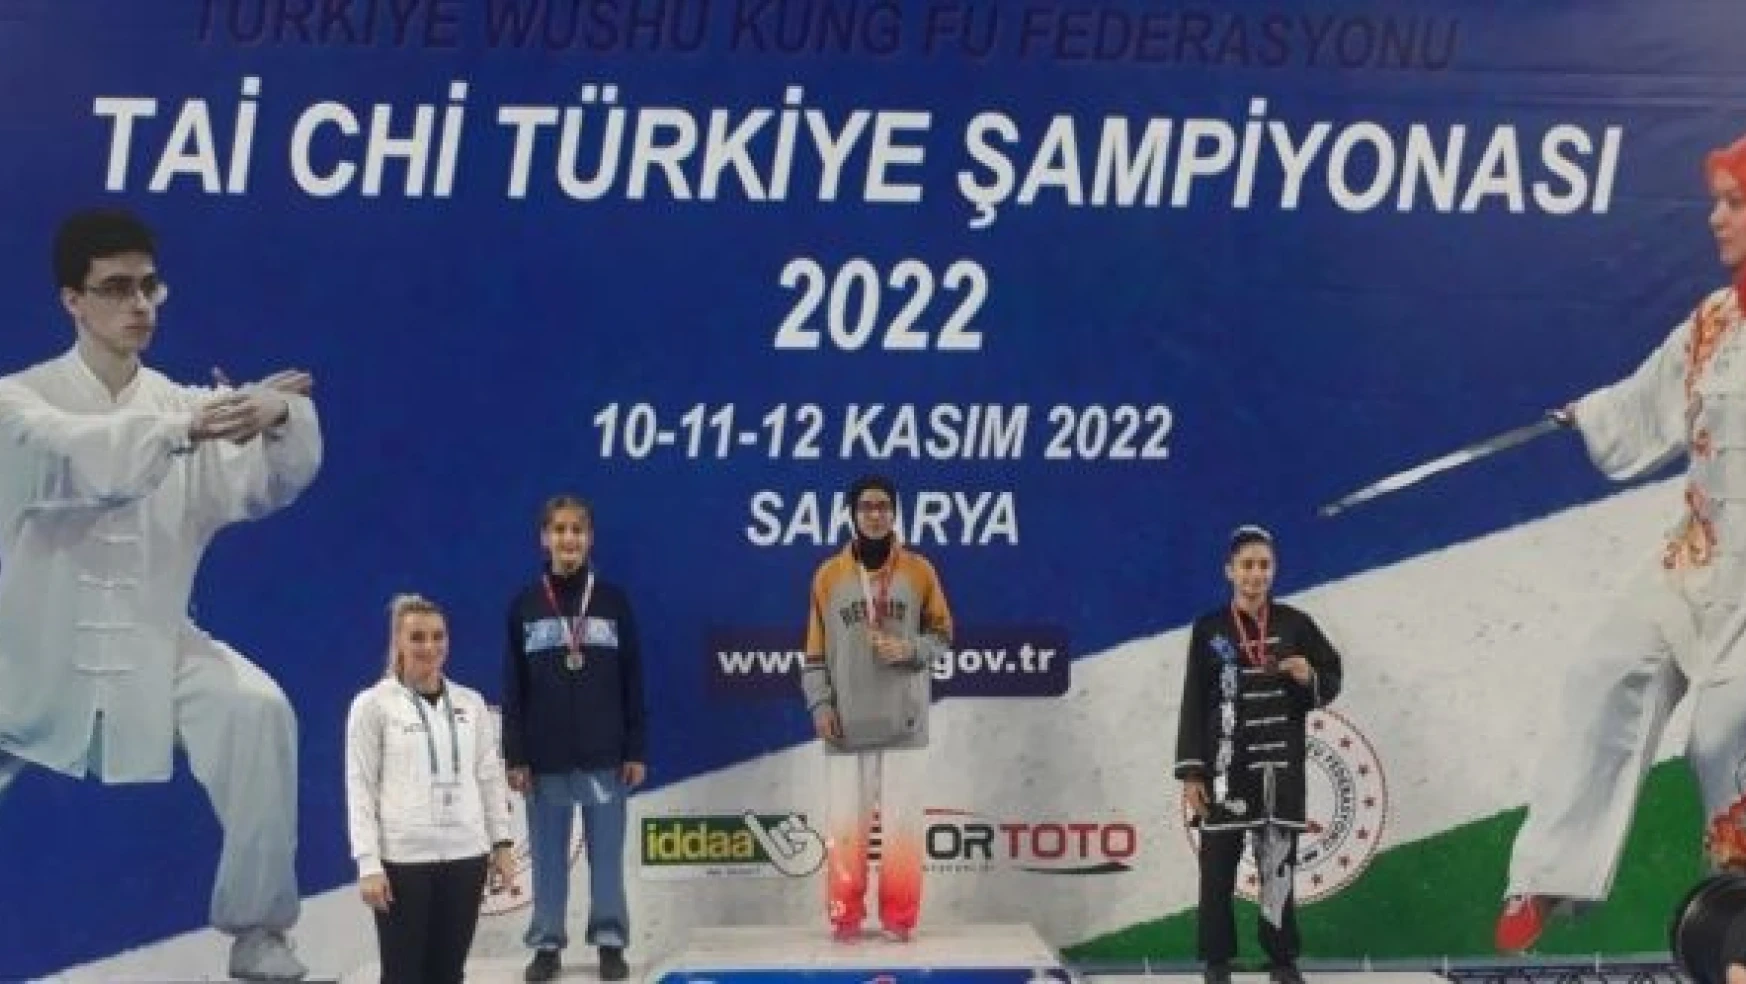 Malatyalı sporcular, Tai Chi Türkiye Şampiyonasında 10 madalyayla döndü